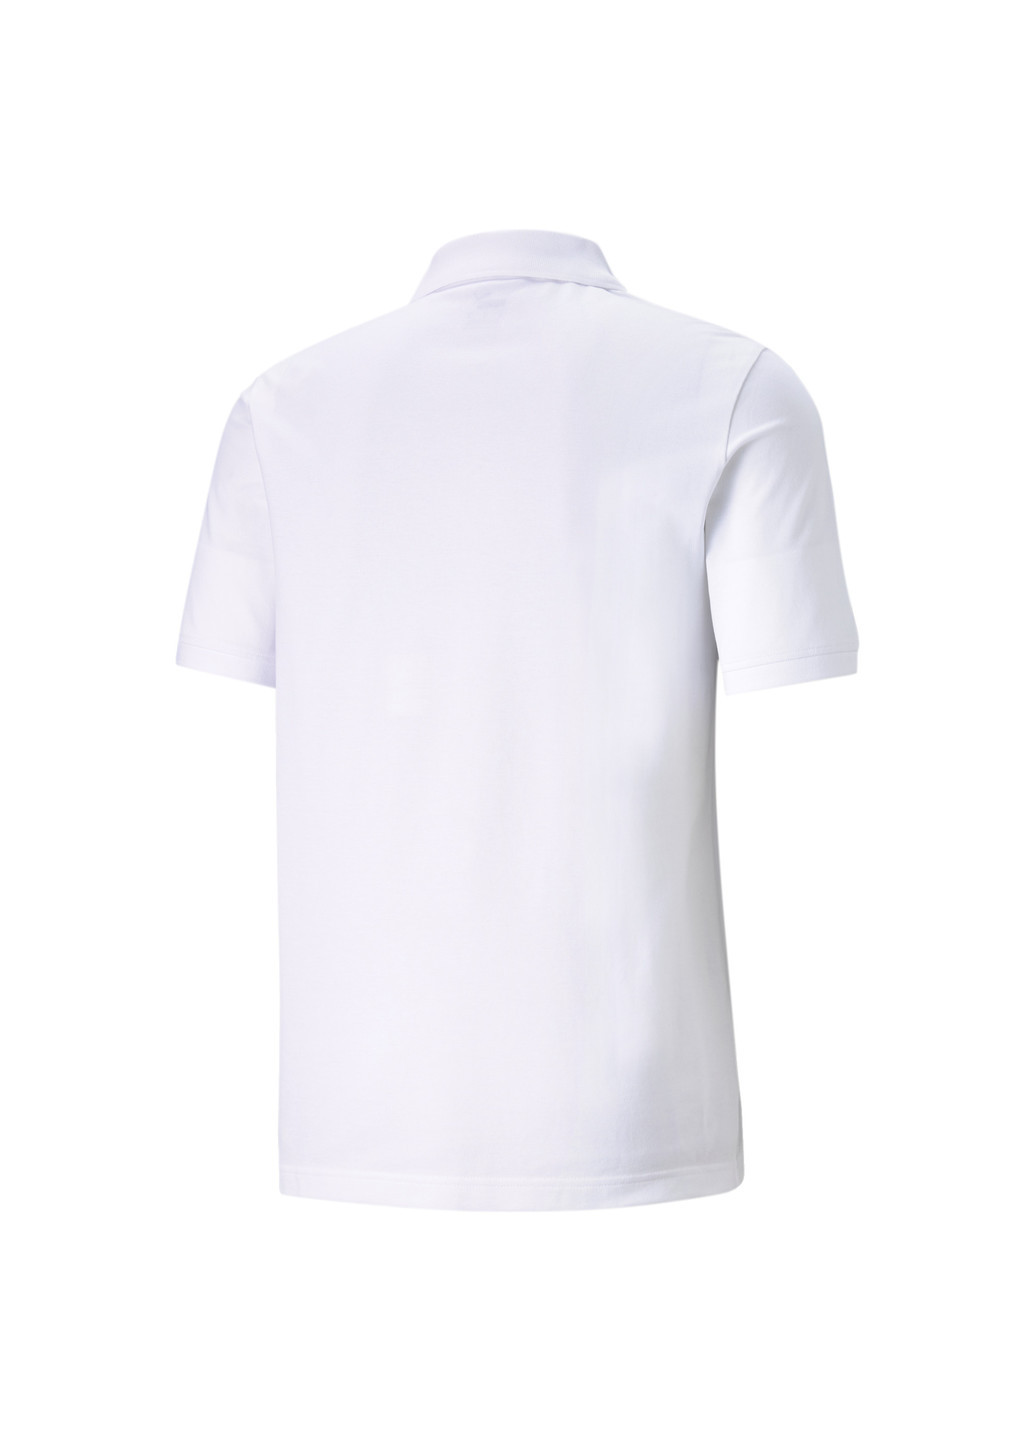 Белая футболка-поло essentials pique men's polo shirt для мужчин Puma однотонная